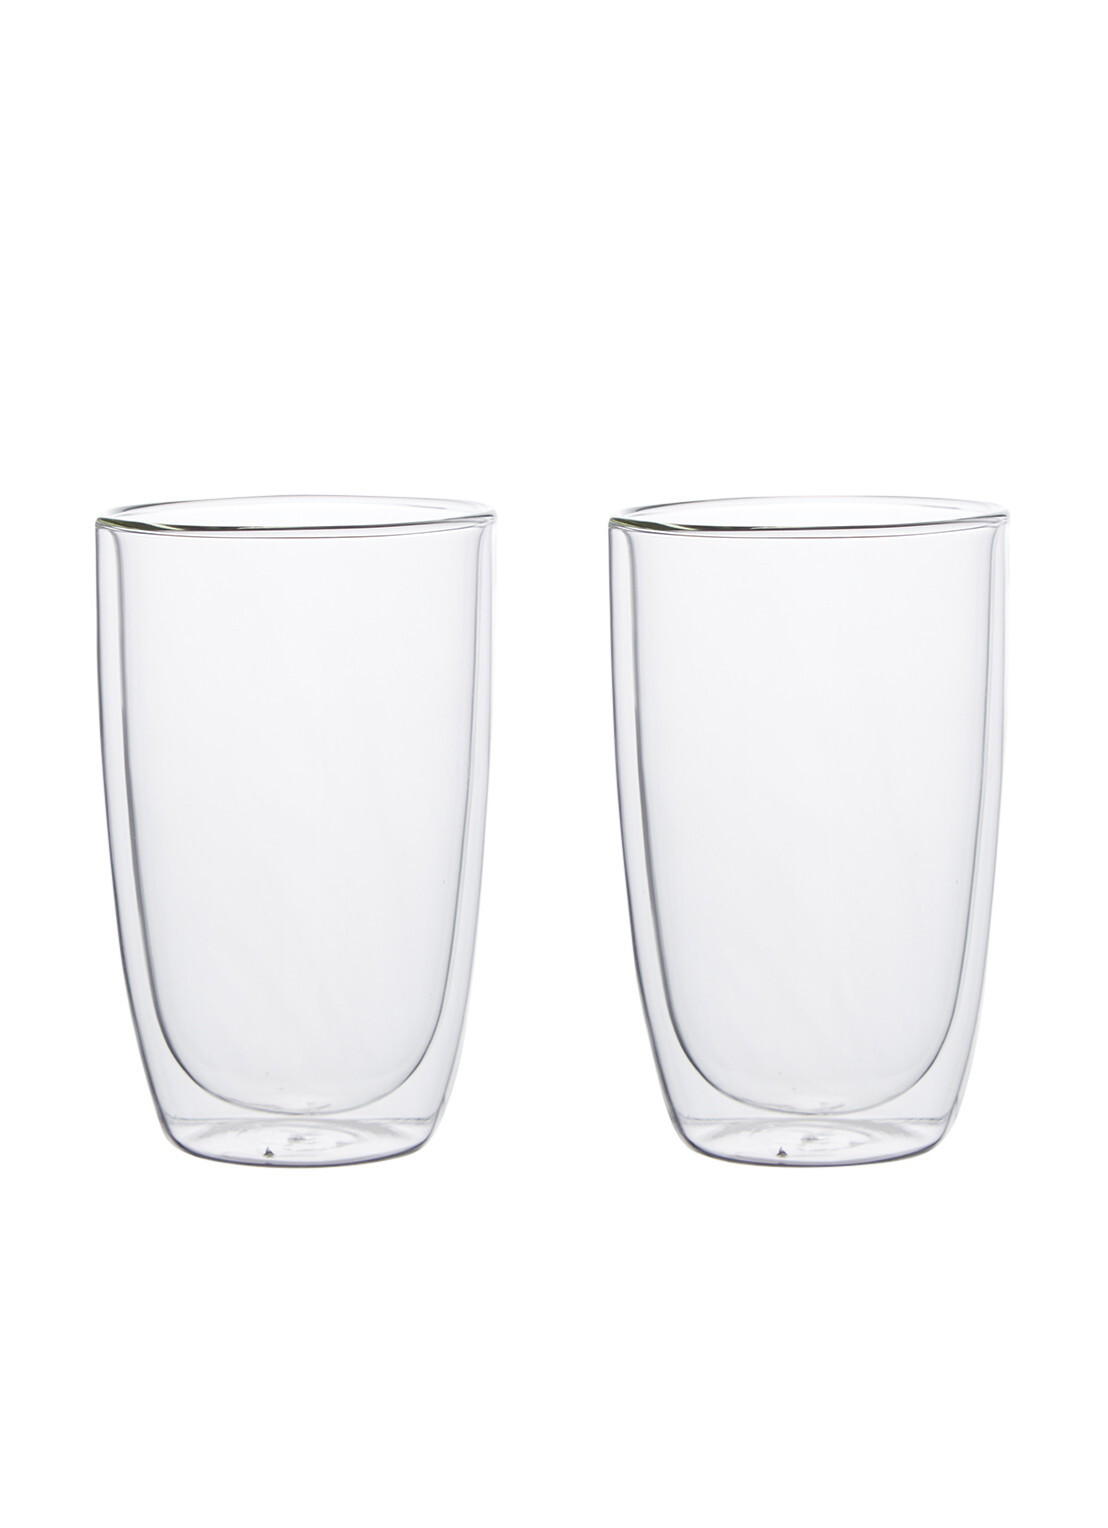 Villeroy & Boch Artesano dubbelwandig glas 45 cl set van 2